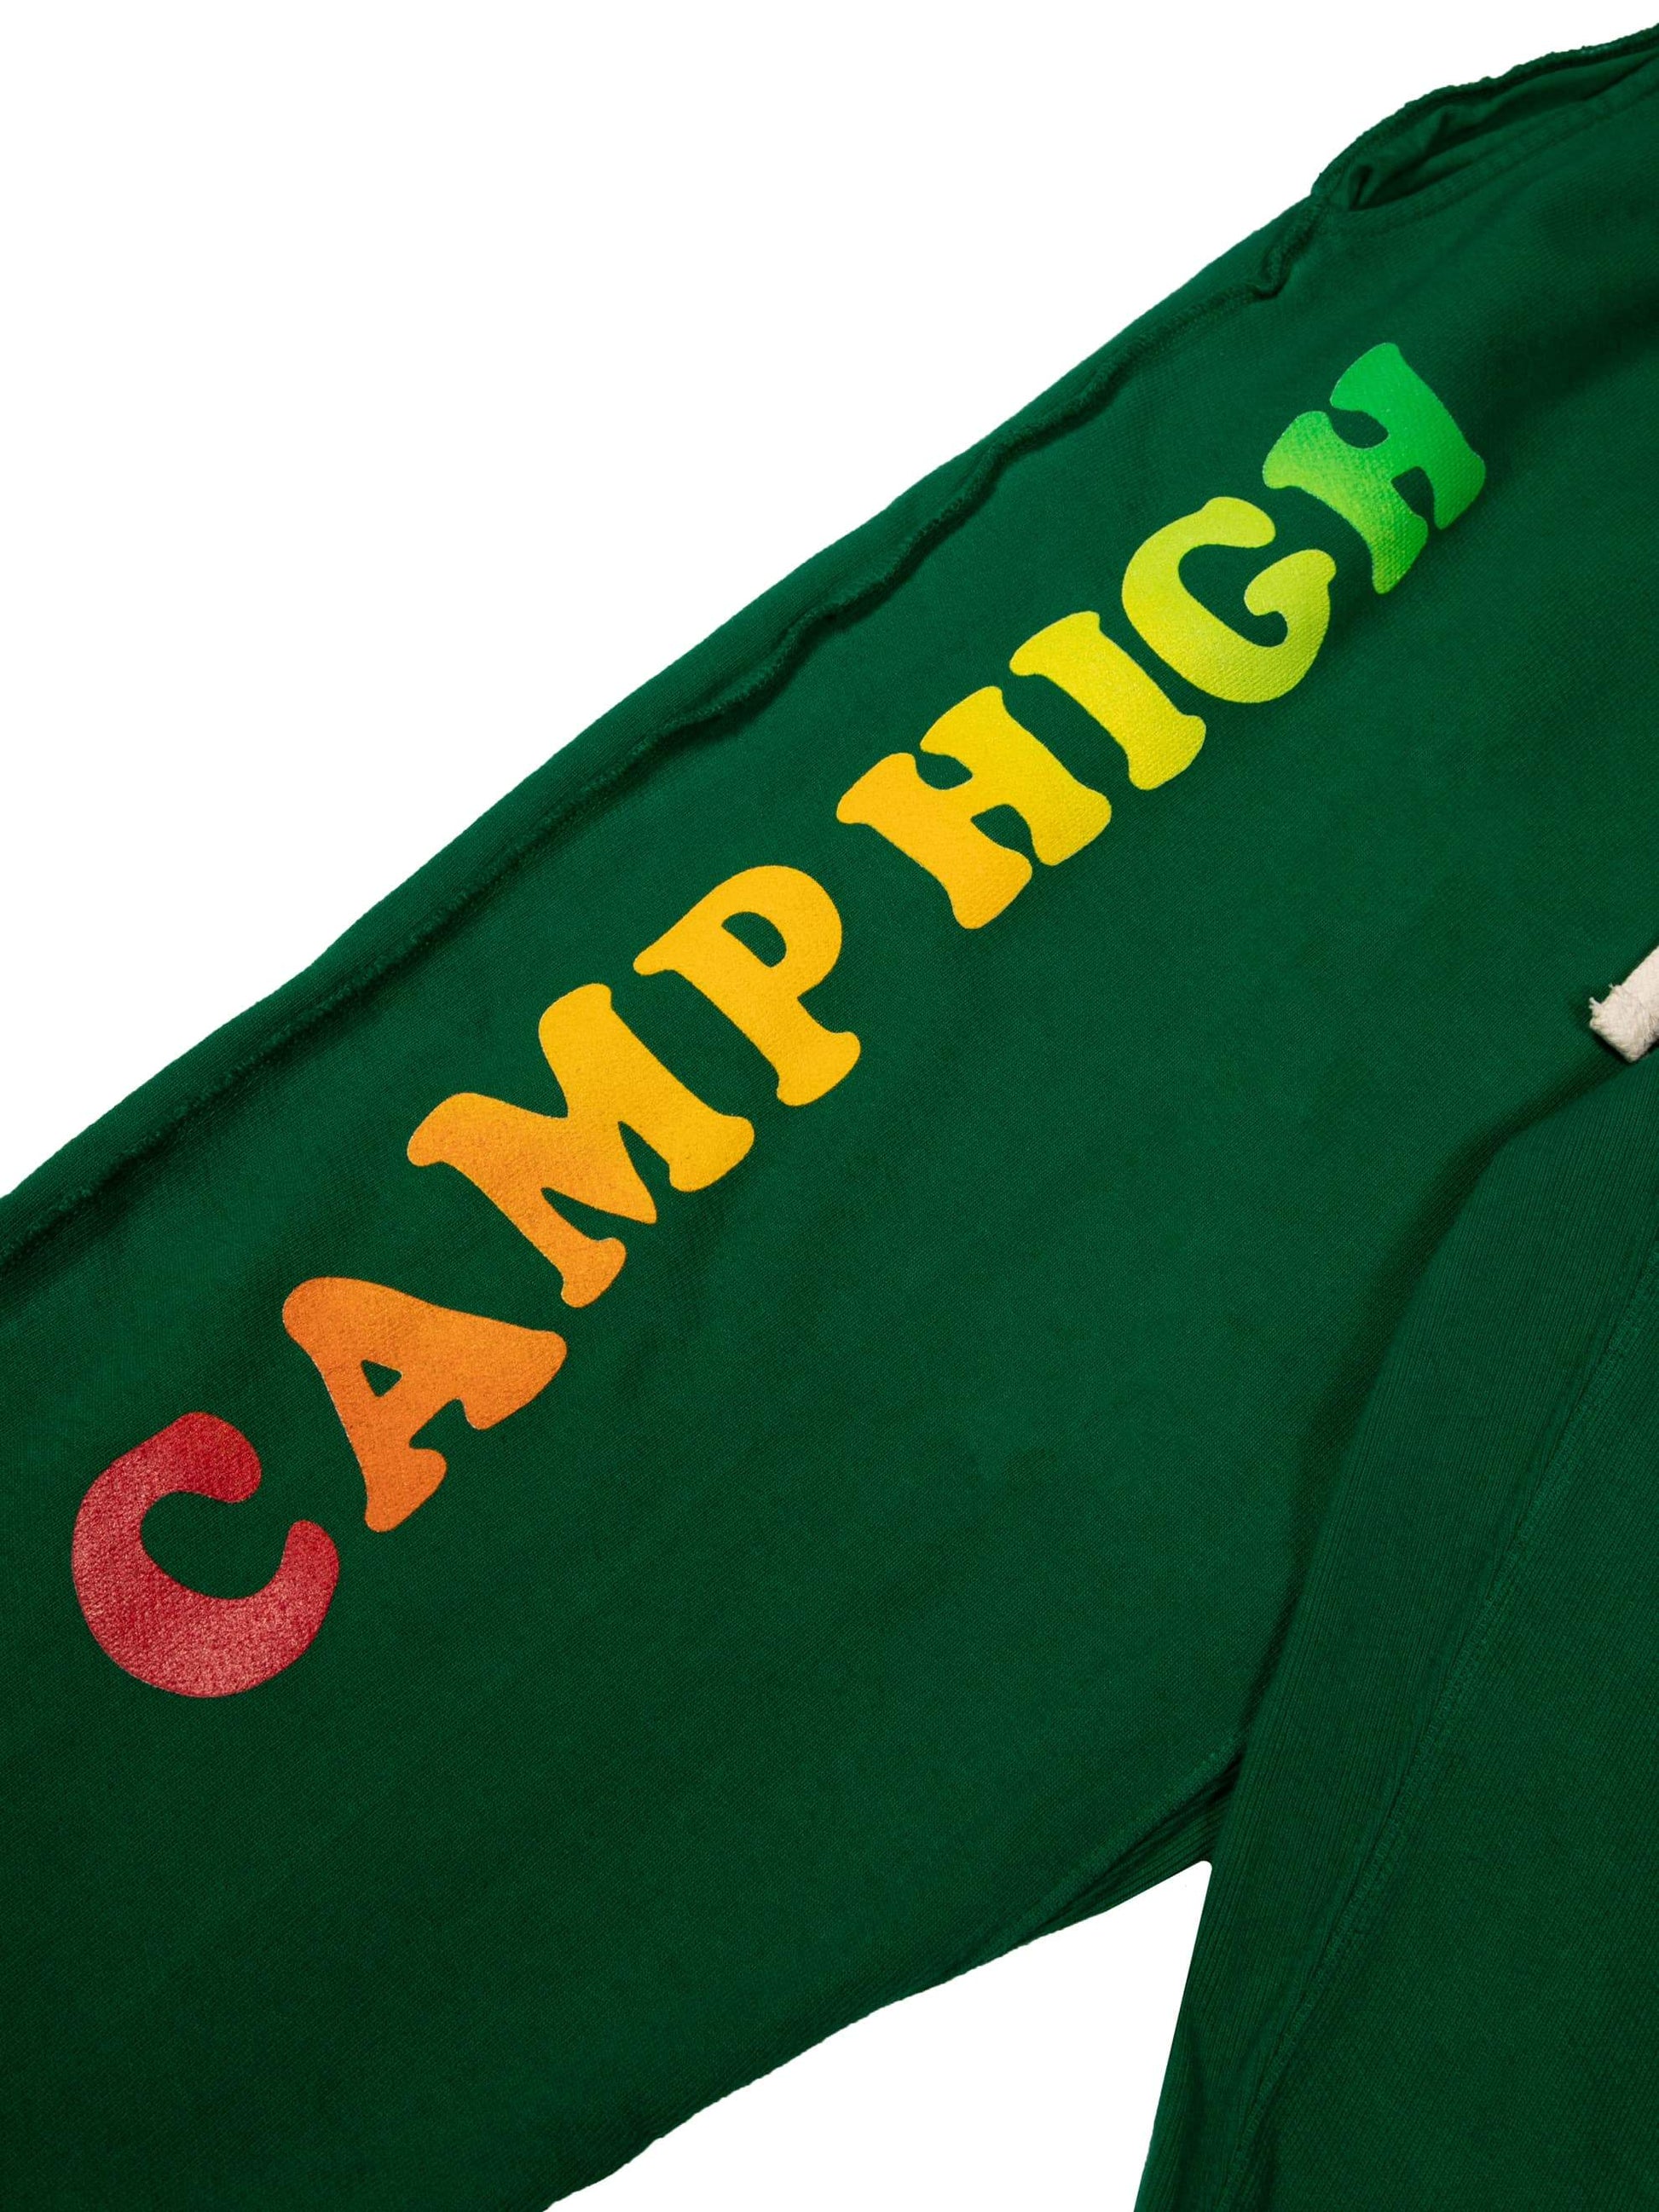 Camp High Counselor Pant